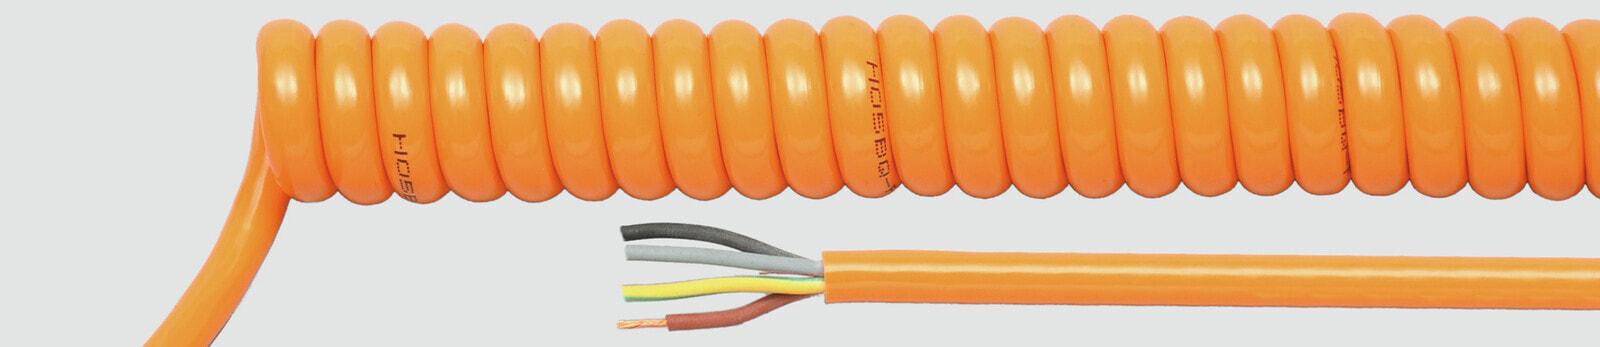 Helukabel 85379 - Low voltage cable - Orange - Cooper - 1.5 mm² - 447.2 kg/km - -25 - 70 °C